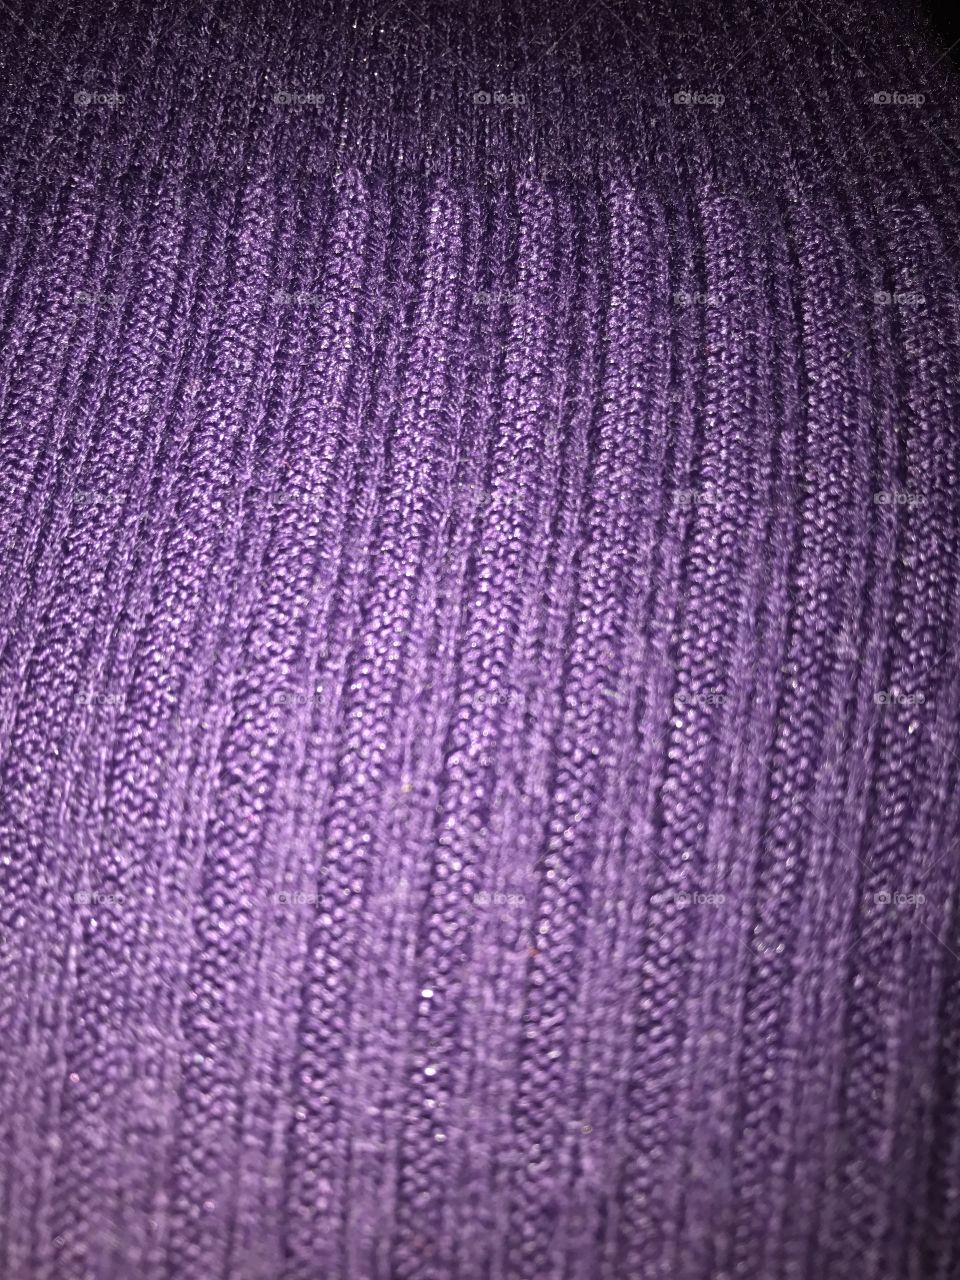 Purple textile